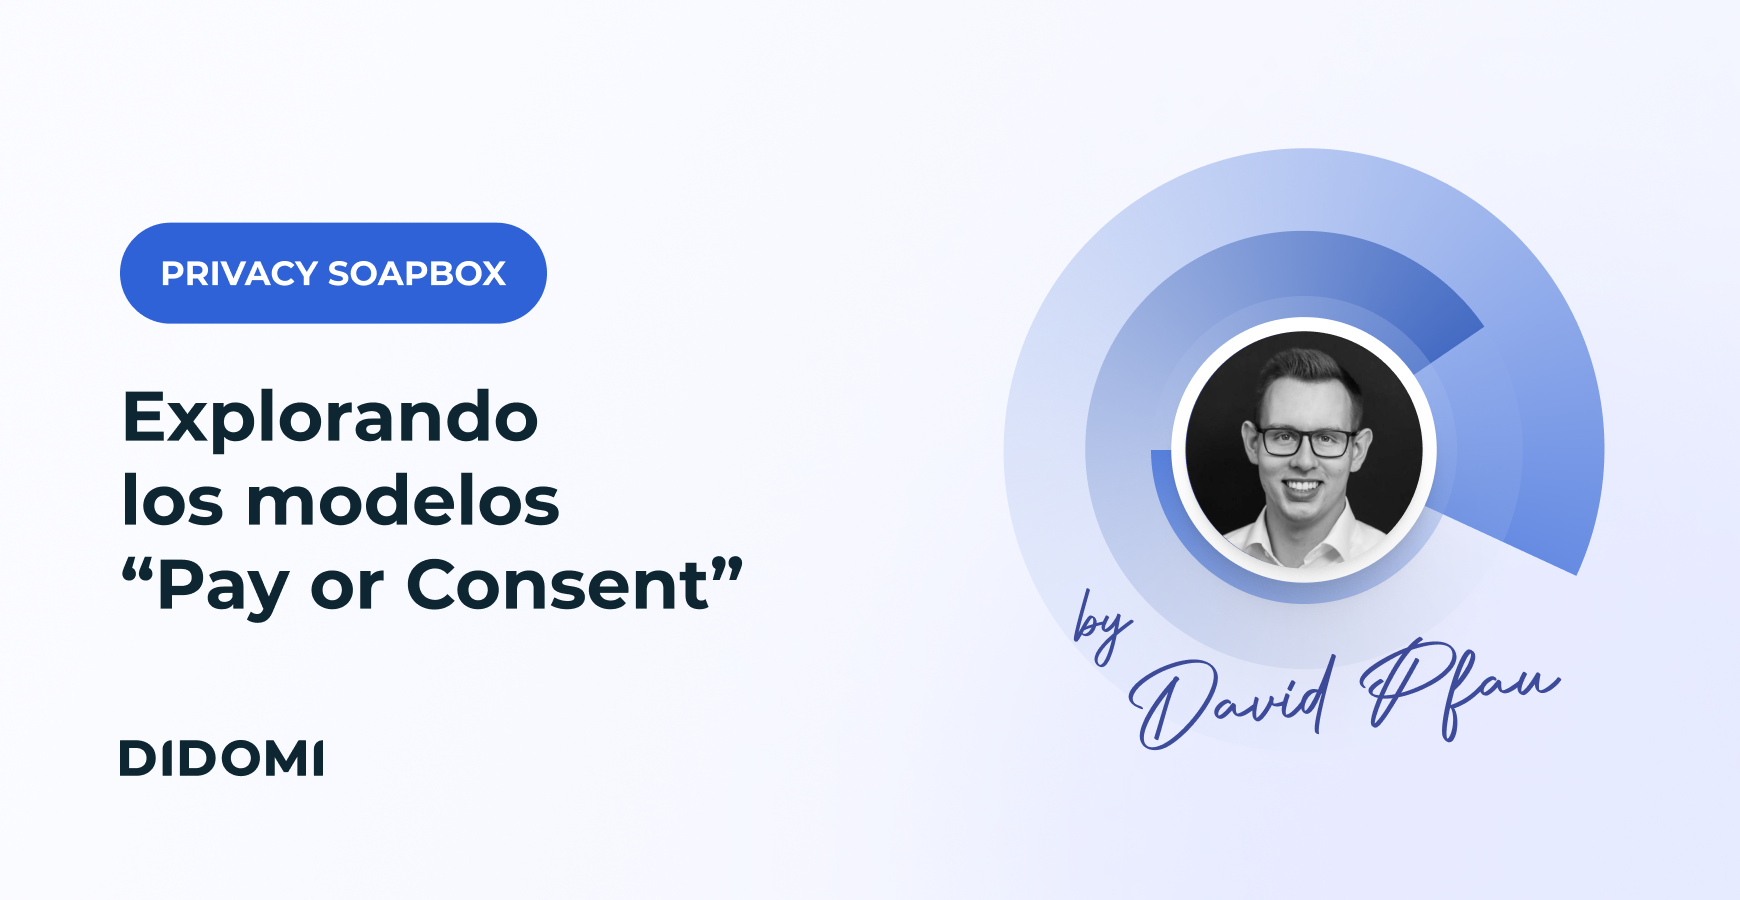 Explorando los modelos “Pay or Consent”: un enfoque equilibrado entre la monetización de contenido y la privacidad del usuario.